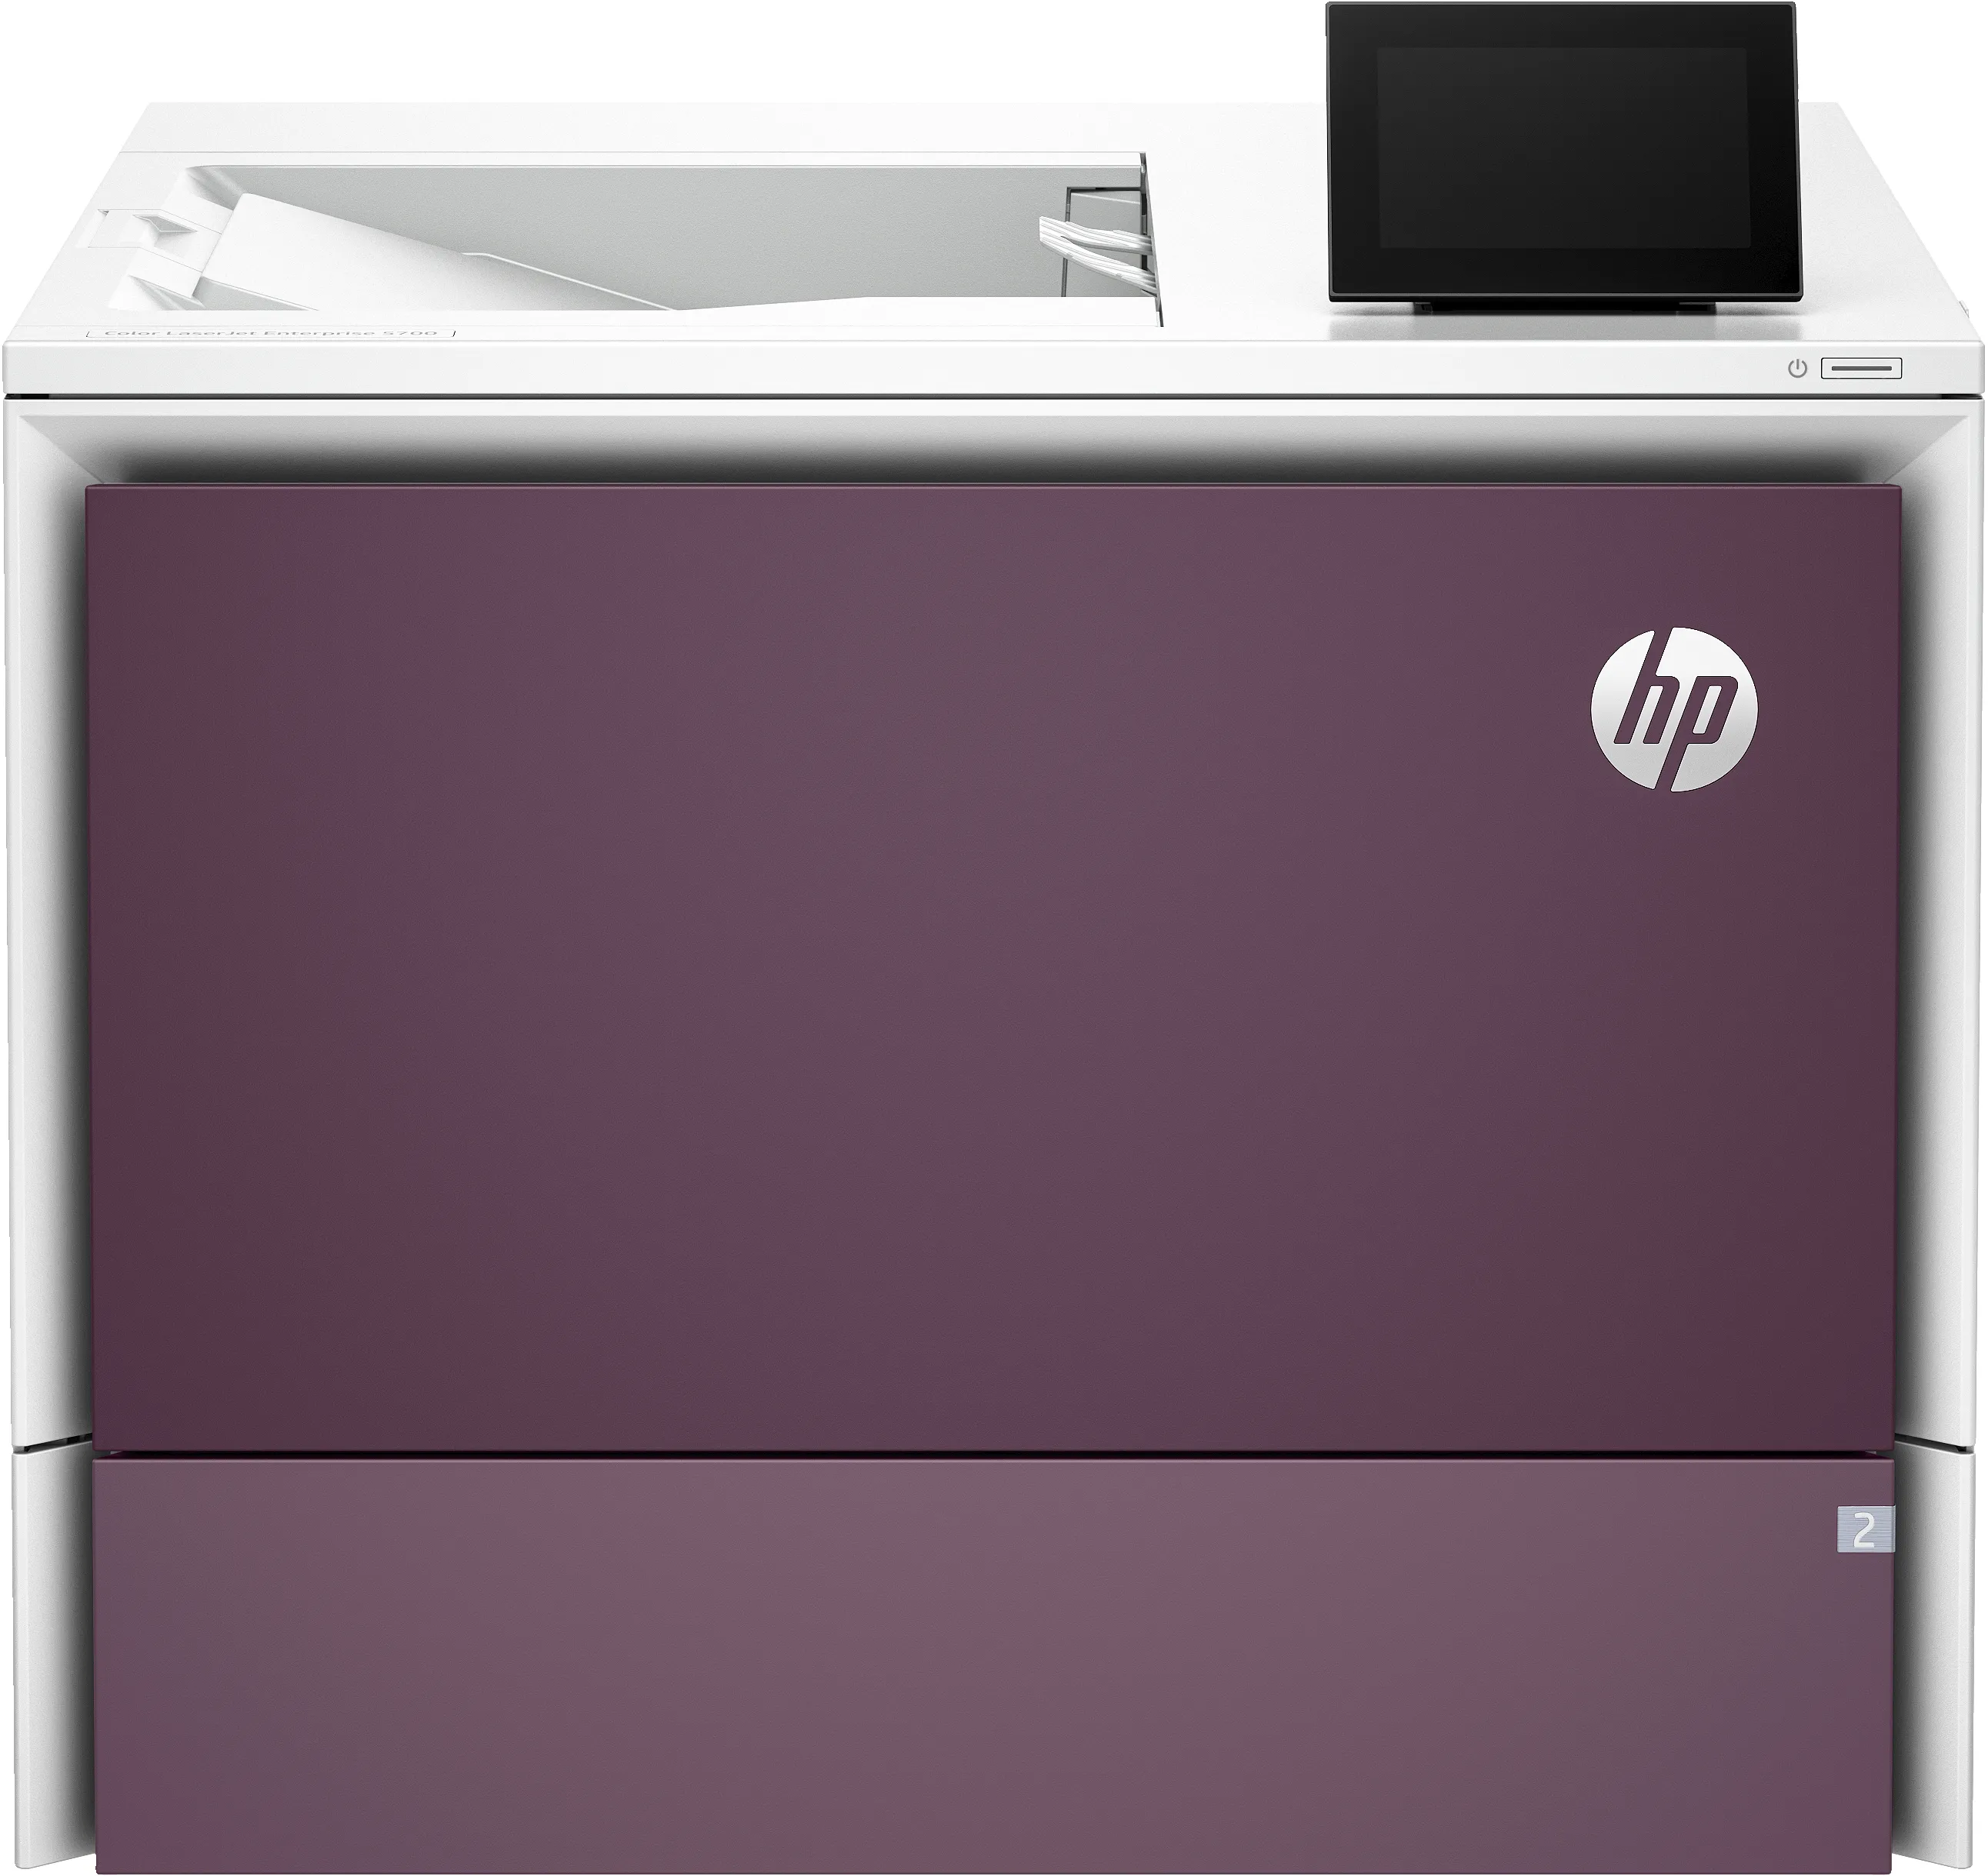 Revendeur officiel Accessoires pour imprimante HP Clr LJ Purple 550 Sheet Paper Tray